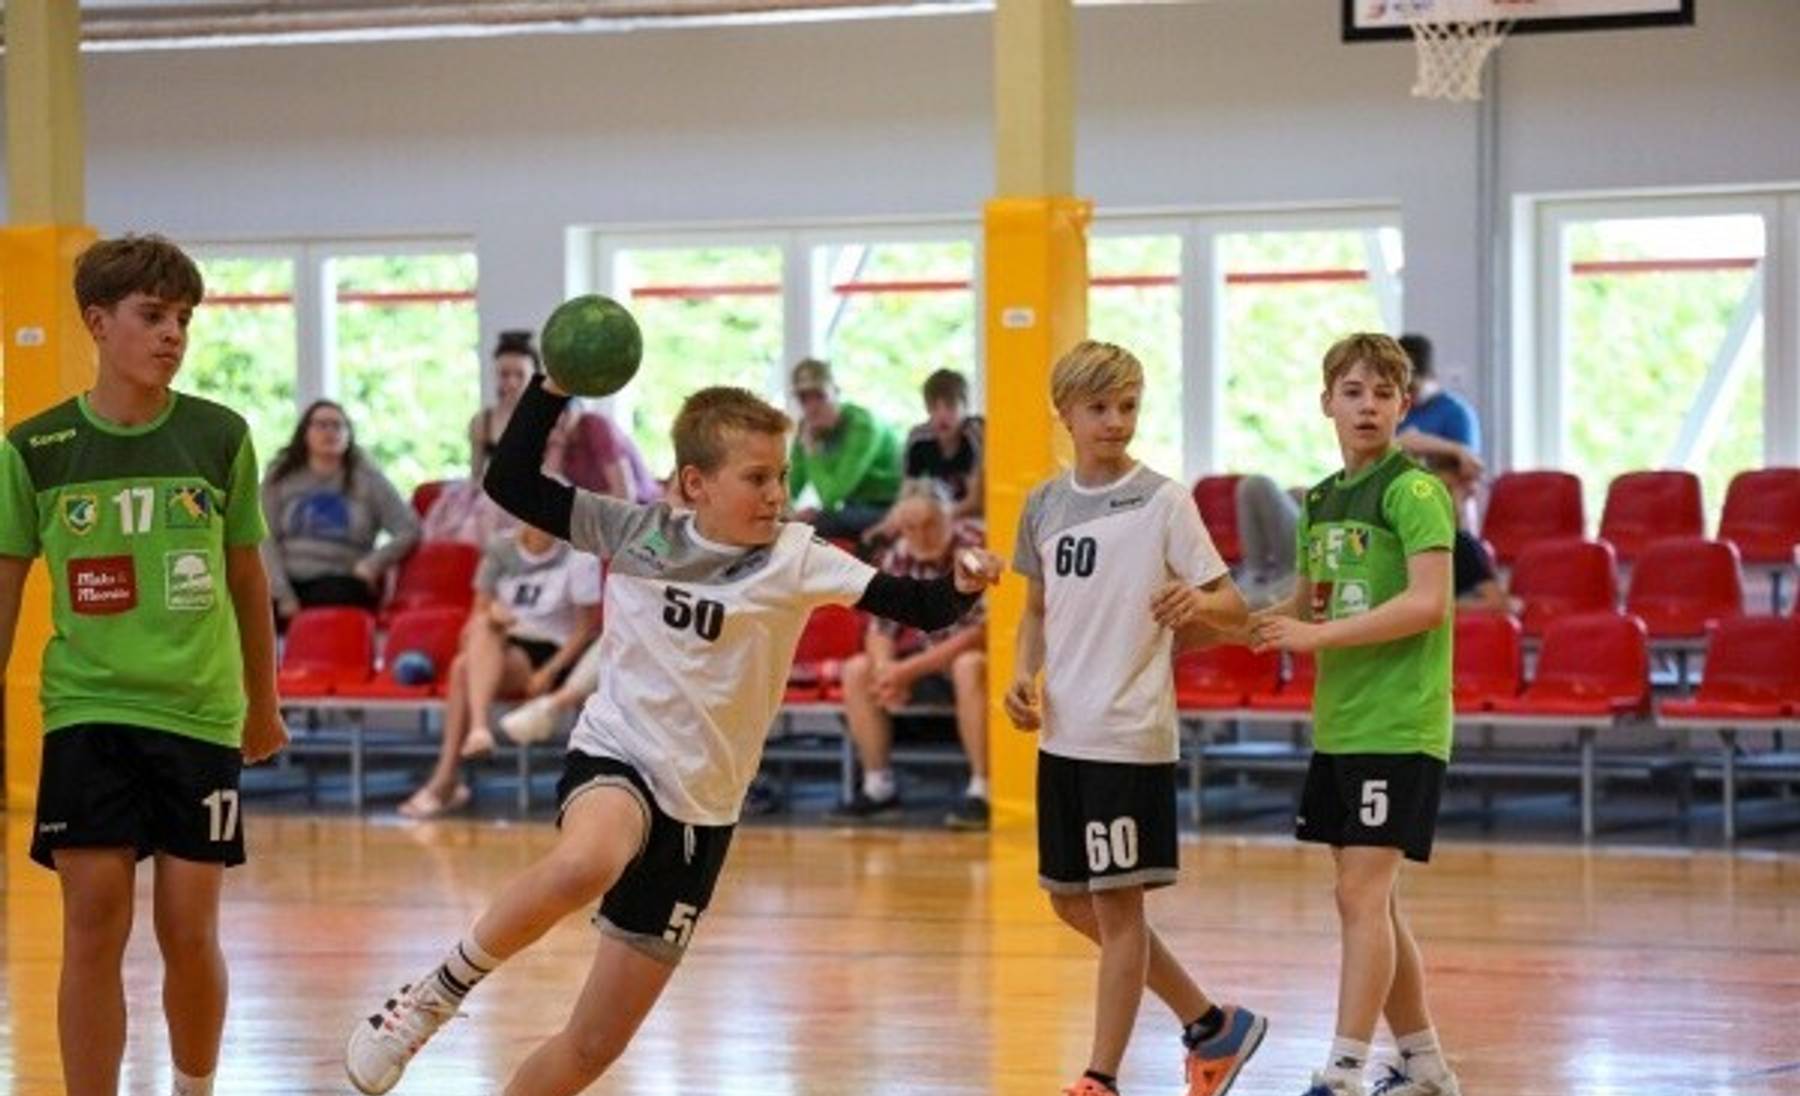 Nädalavahetusel jätkuvad Arukülas noormeeste C vanuseklassi 2023 Eesti meistrivõistlused käsipallis II etapi mängudega